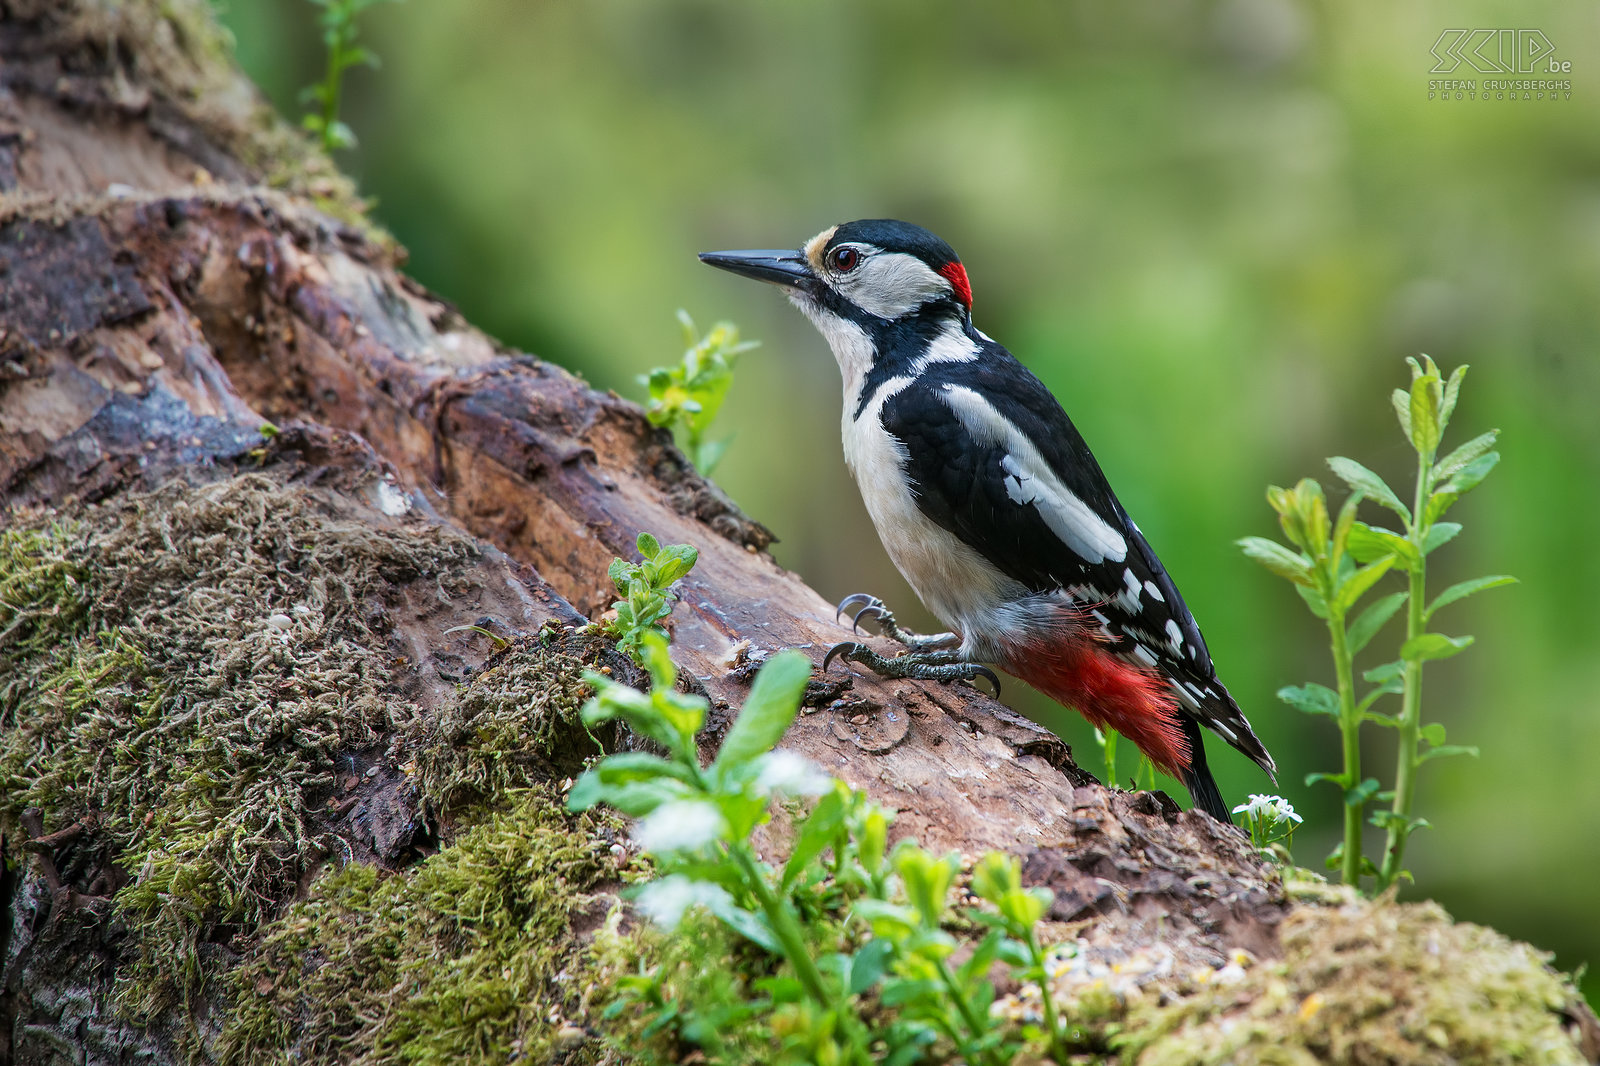 Vogels - Grote bonte specht Mannelijke grote bonte specht (Great spotted woodpecker/Dendrocopos major). Het mannetje heeft een rode vlek op het achterhoofd, het vrouwtje heeft een geheel zwarte kruin. Stefan Cruysberghs